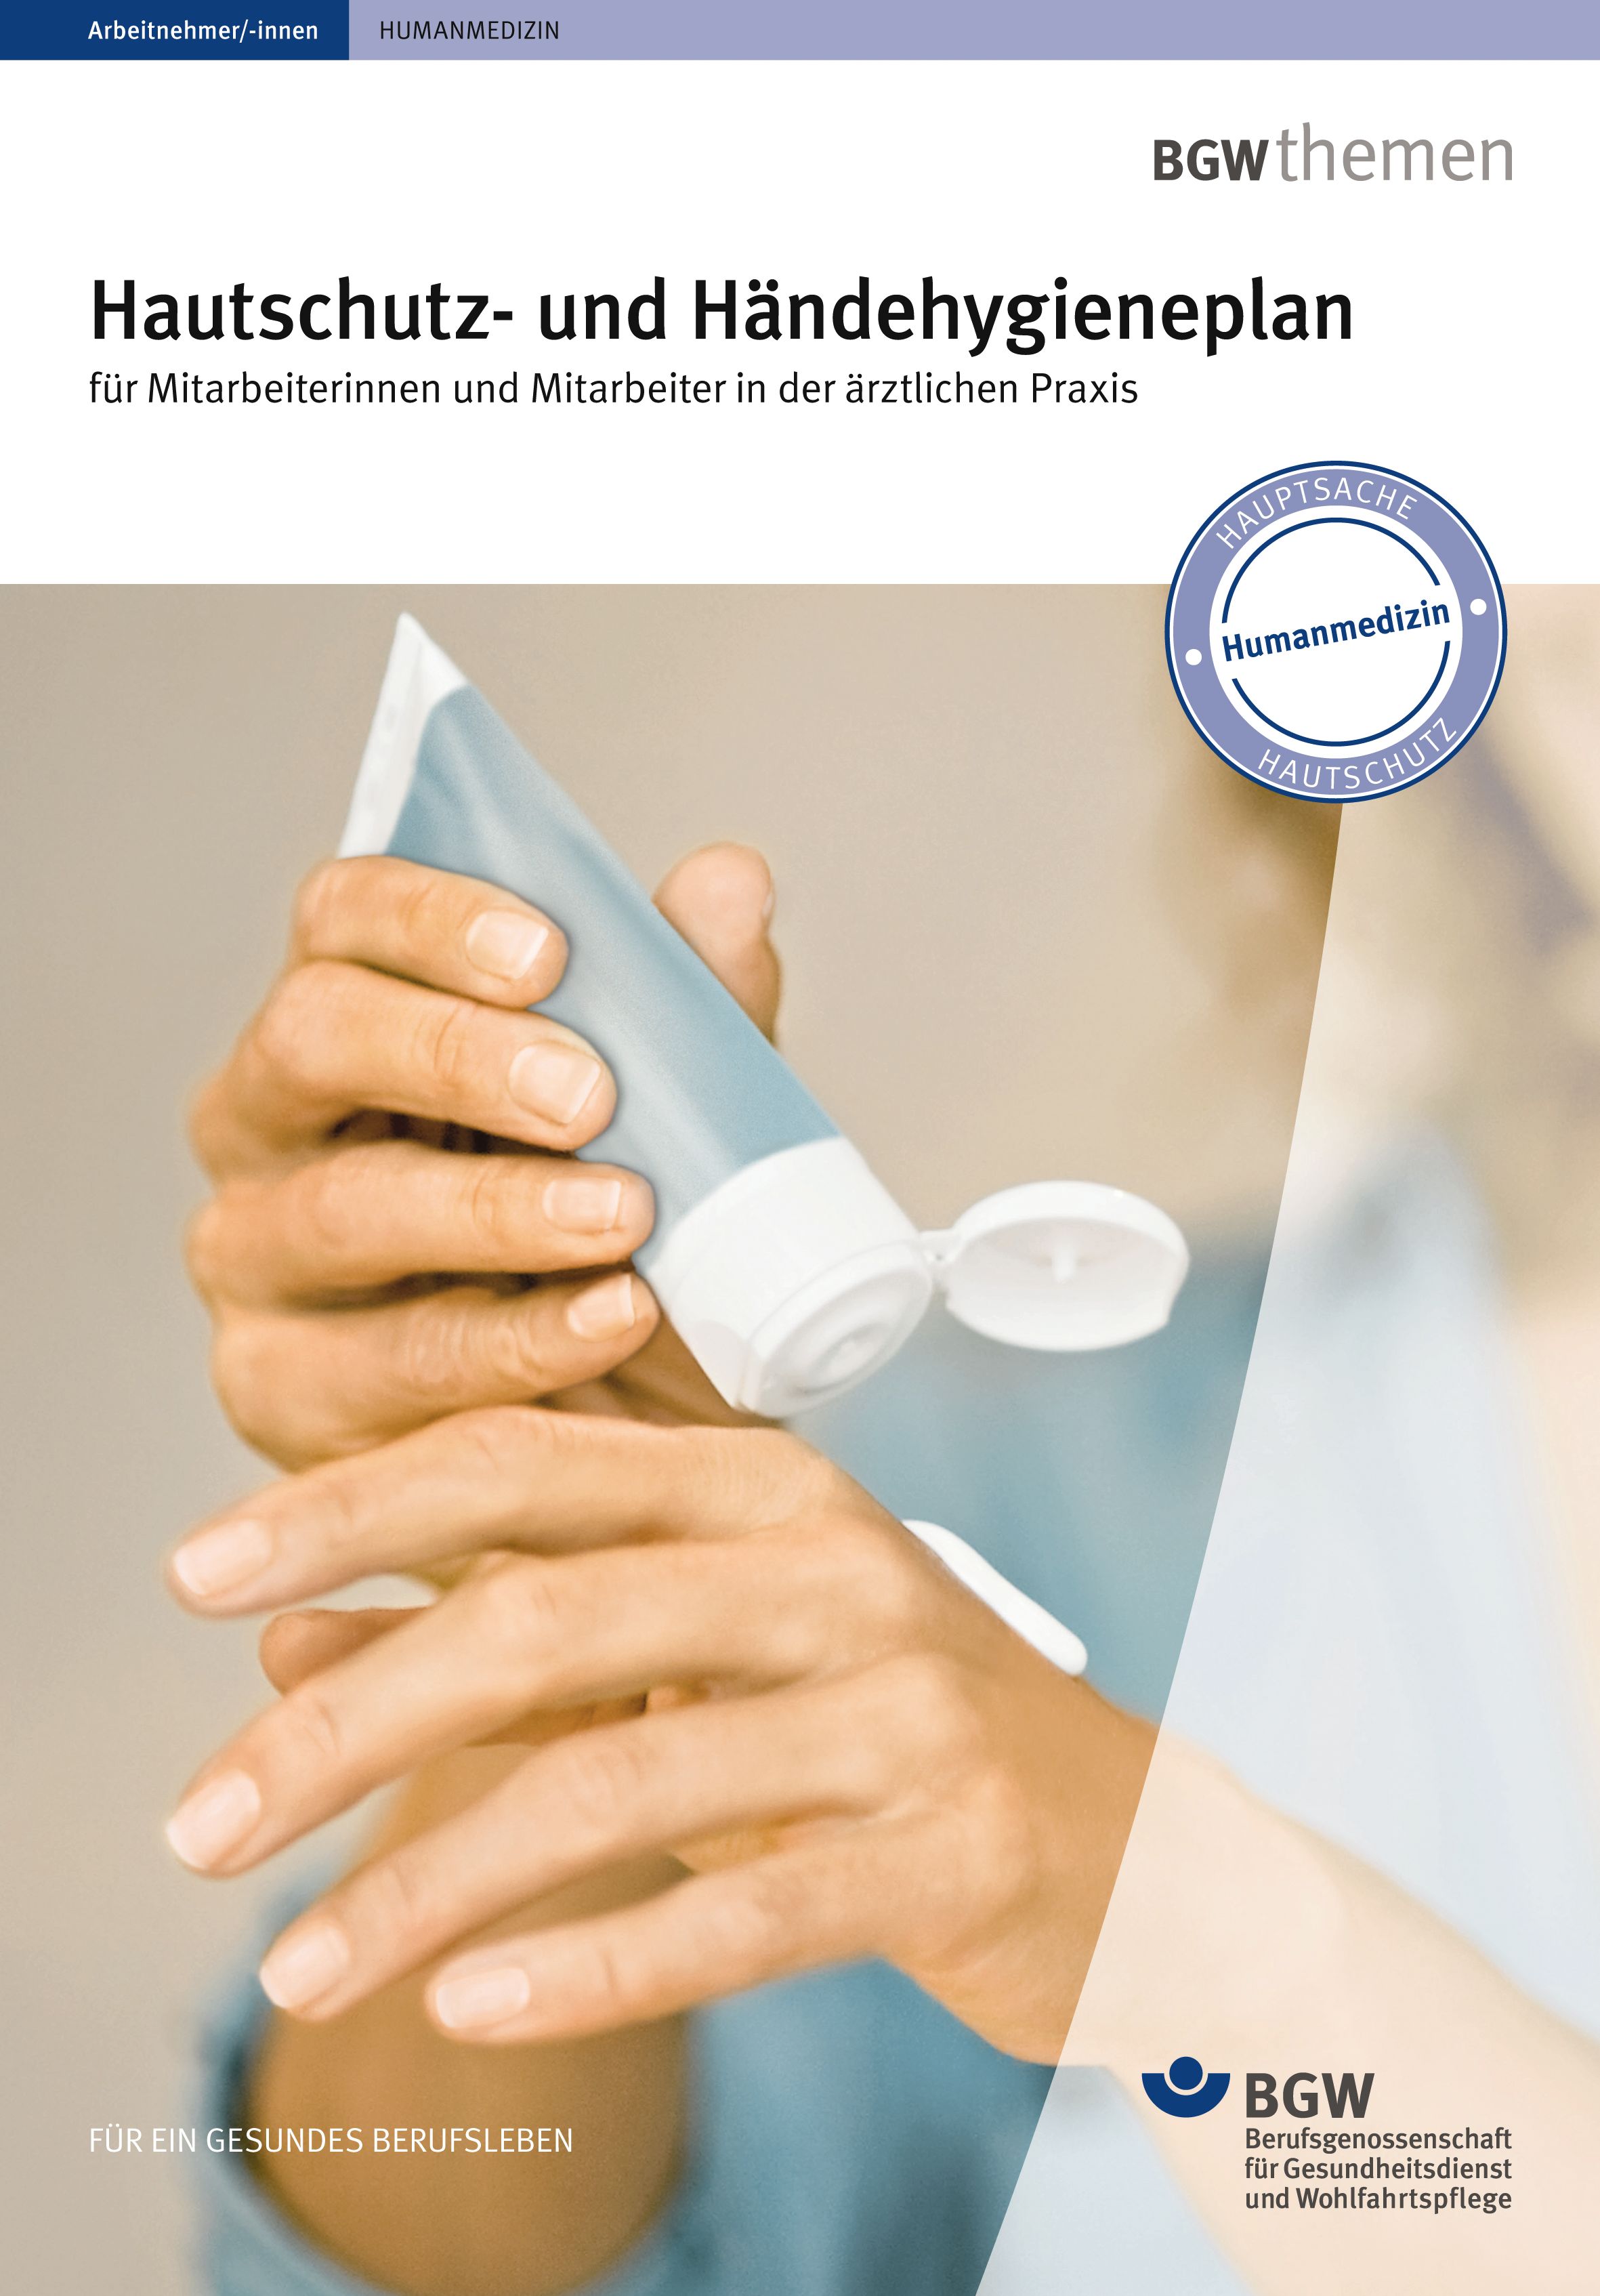 Titel: Hautschutz- und Händehygieneplan für die Arztpraxis - Junge Frau appliziert sich Handcreme aus der Tube auf die Hand